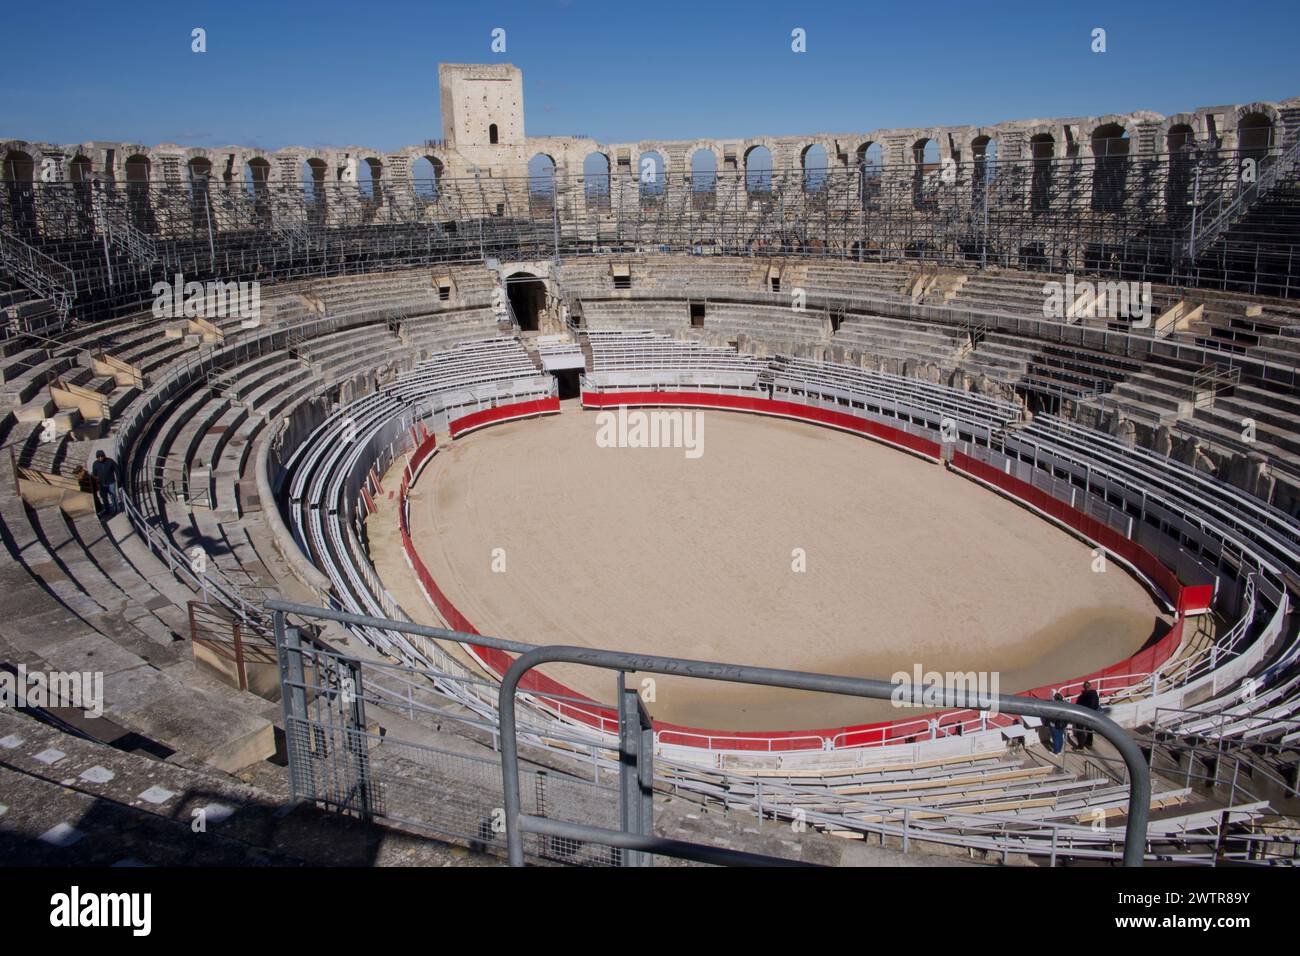 L'arène de l'Amphithéâtre d'Arles - Arènes d'Arles - amphithéâtre romain à Arles France Banque D'Images